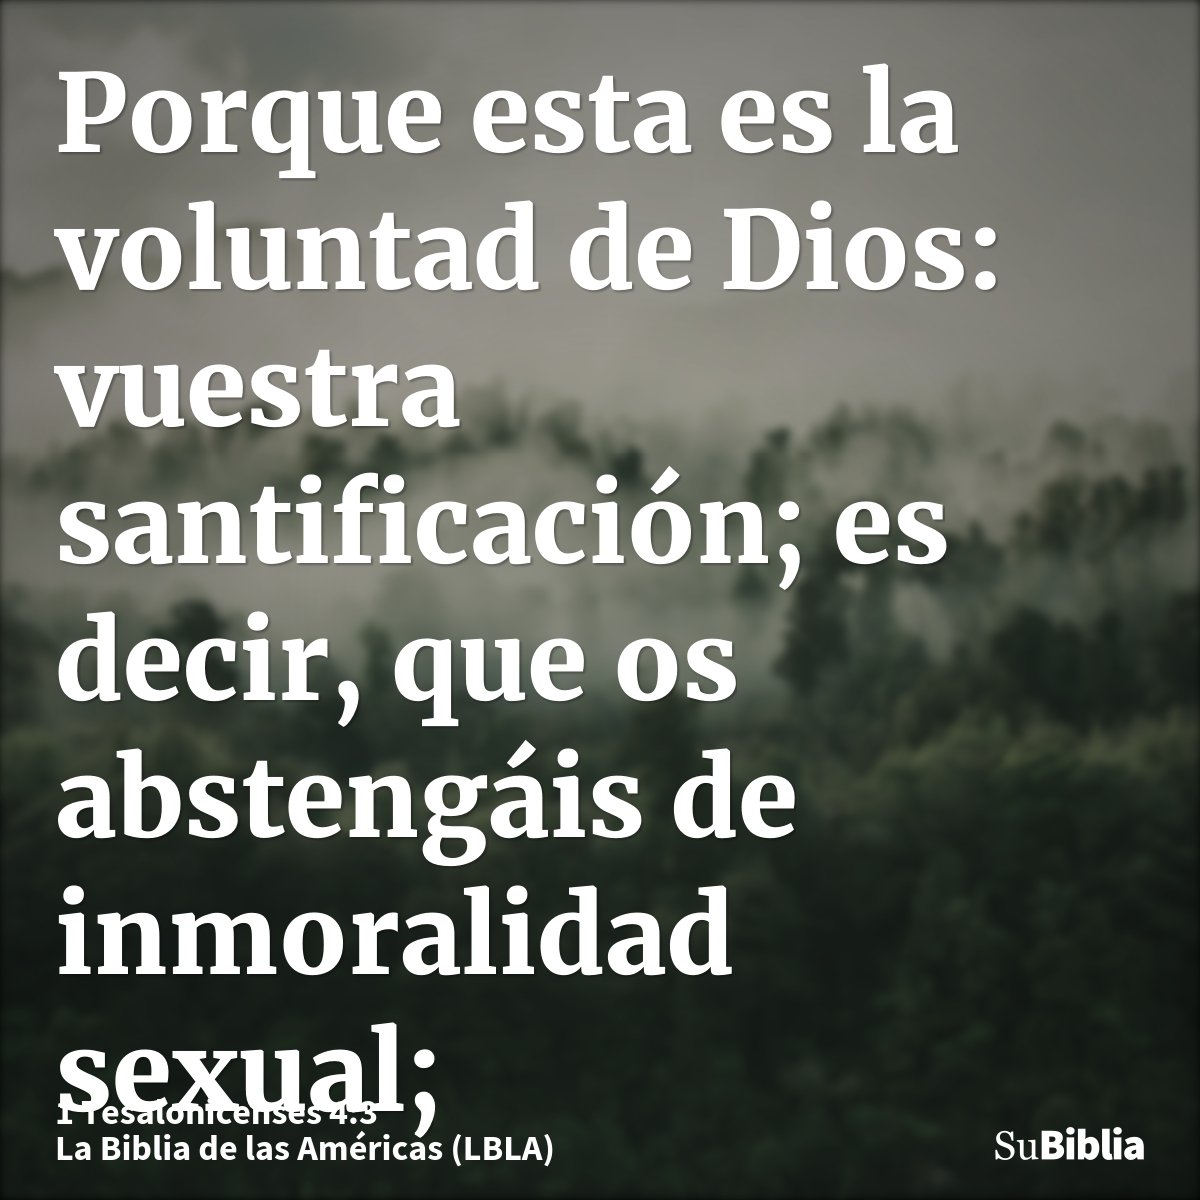 Porque esta es la voluntad de Dios: vuestra santificación; es decir, que os abstengáis de inmoralidad sexual;